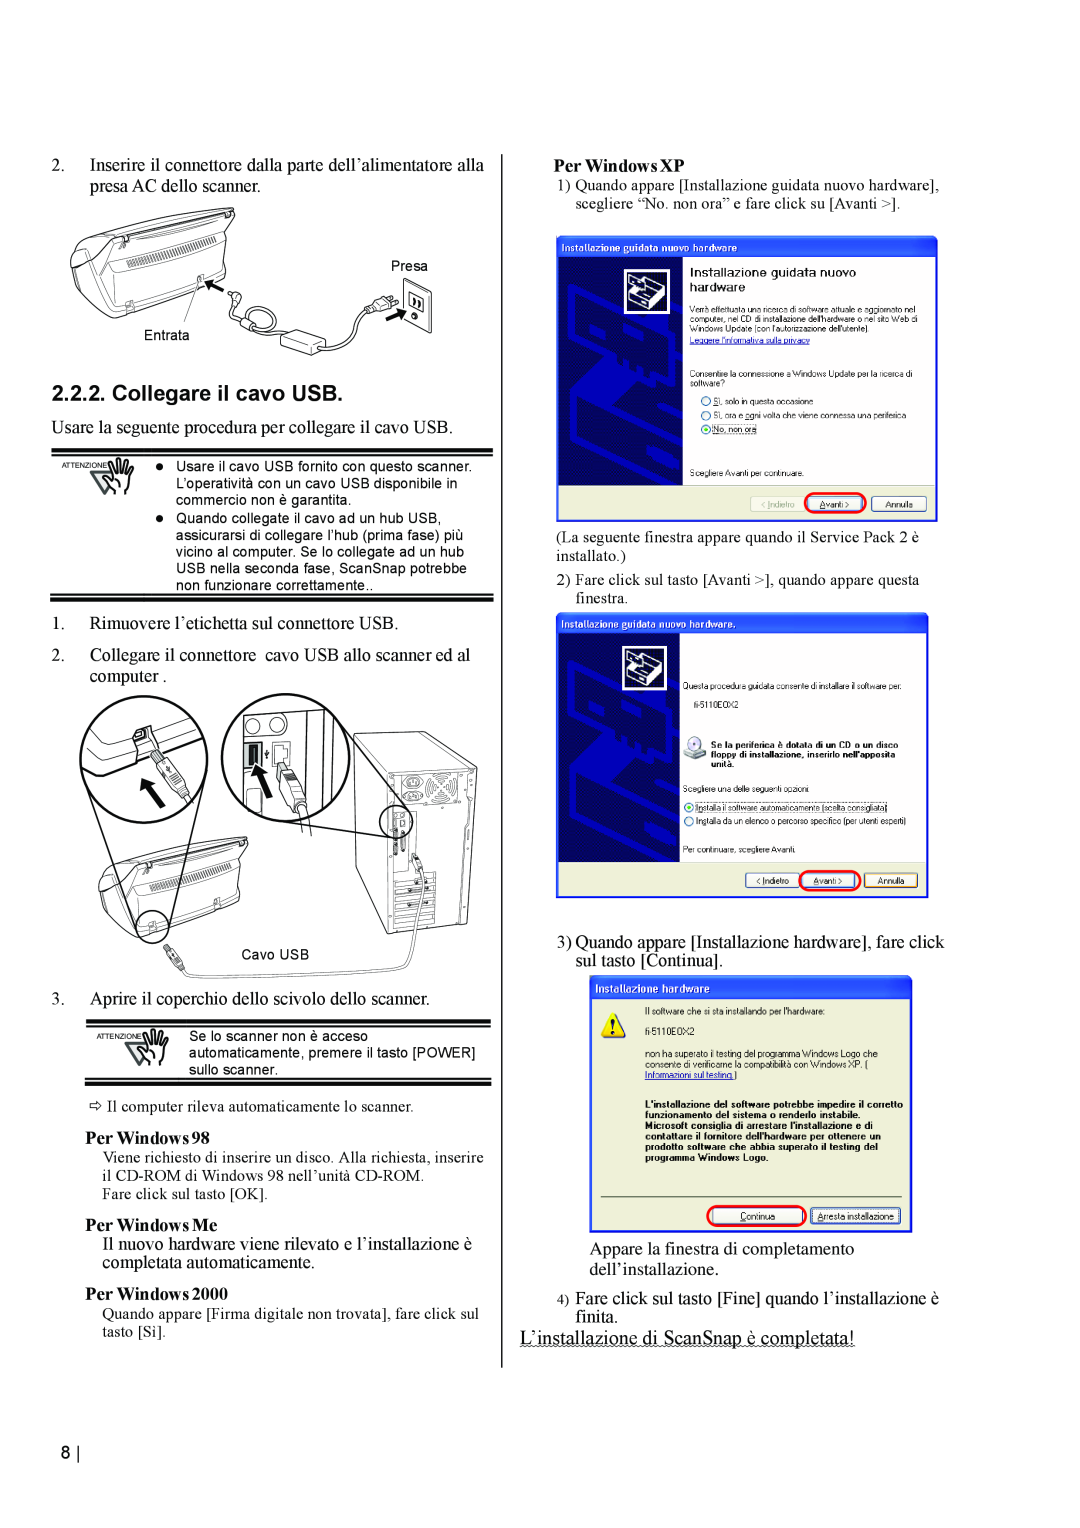 Fujitsu fi-5110EOX2 Collegare il cavo USB, L’installazione di ScanSnap è completata, Per Windows Me, Per Windows XP 